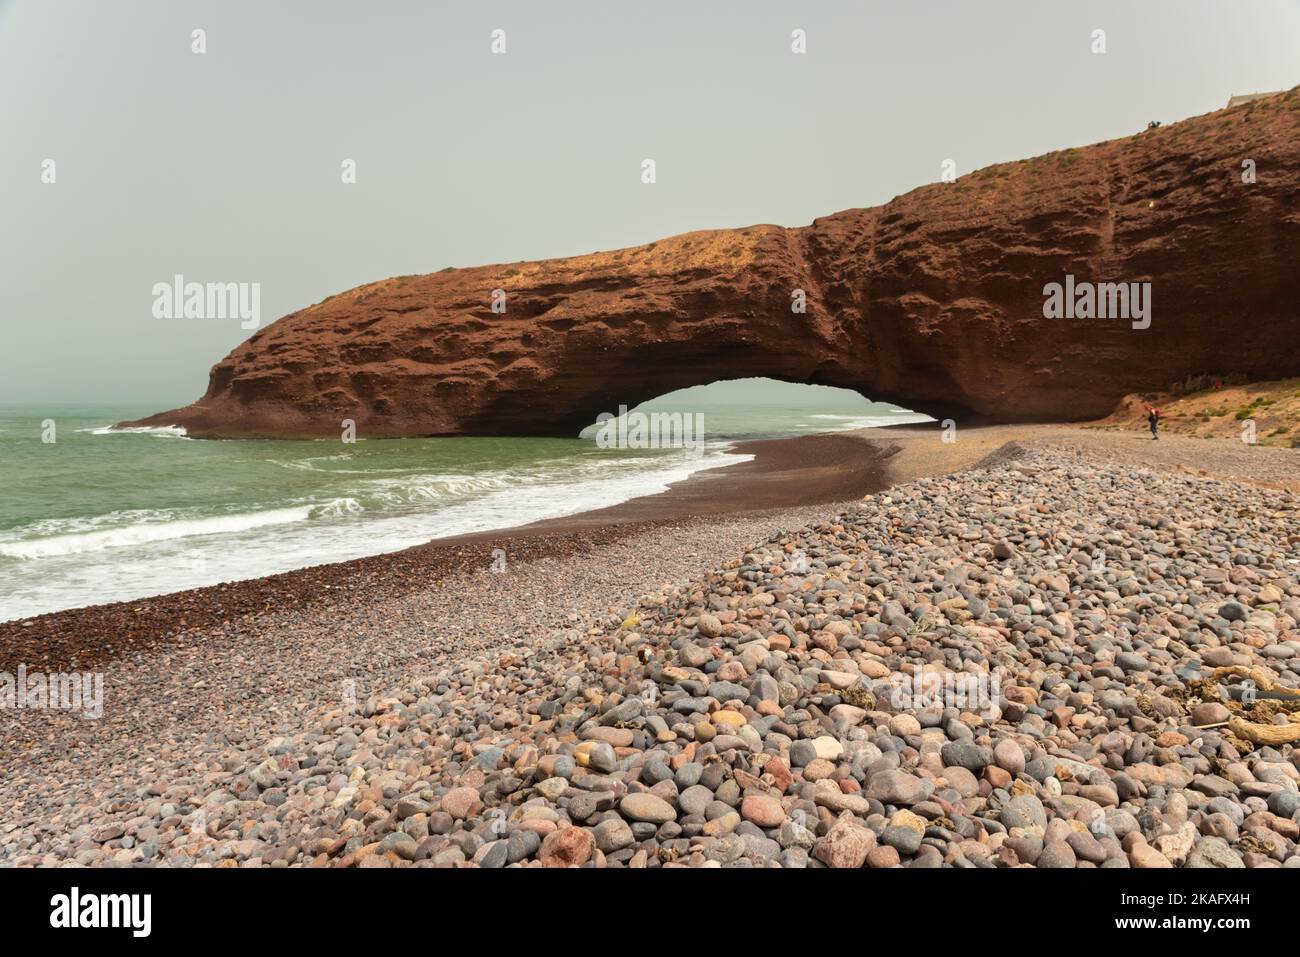 Paisaje de la playa de Legzira con sus arcos naturales en la costa del océano Atlántico. Marruecos. Foto de stock